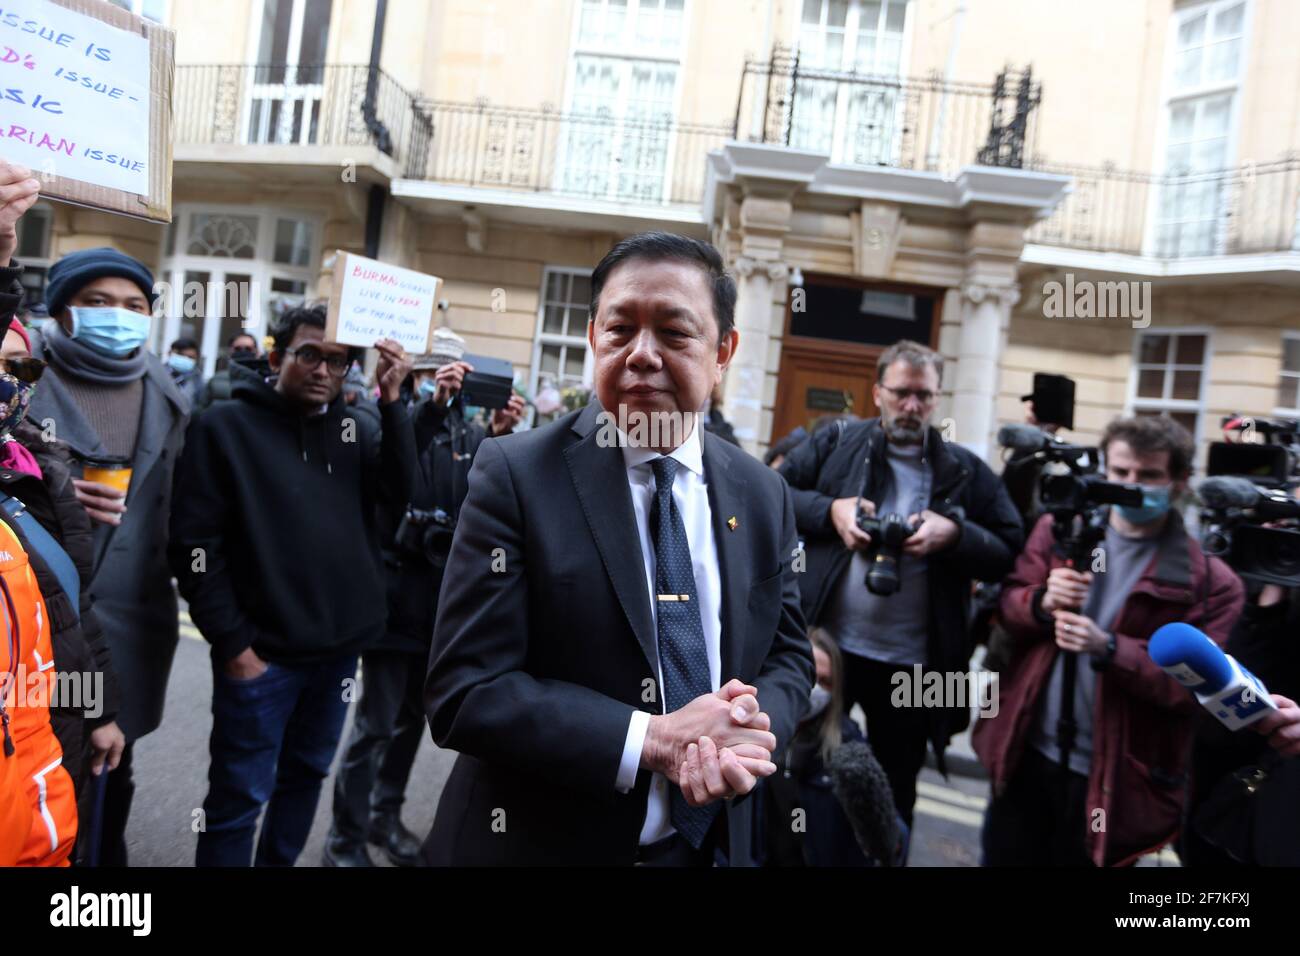 Londra, Inghilterra, Regno Unito. 8 Apr 2021. L'ambasciatore del Myanmar nel Regno Unito Kyaw Zwar min è visto fuori dell'ambasciata del Myanmar (Birmania) a Londra. Ieri lui e alcuni membri del personale sono stati bloccati fuori dalla sua ambasciata dall'addetto militare che ha preso il controllo dei terreni. Credit: Tayfun Salci/ZUMA Wire/Alamy Live News Foto Stock